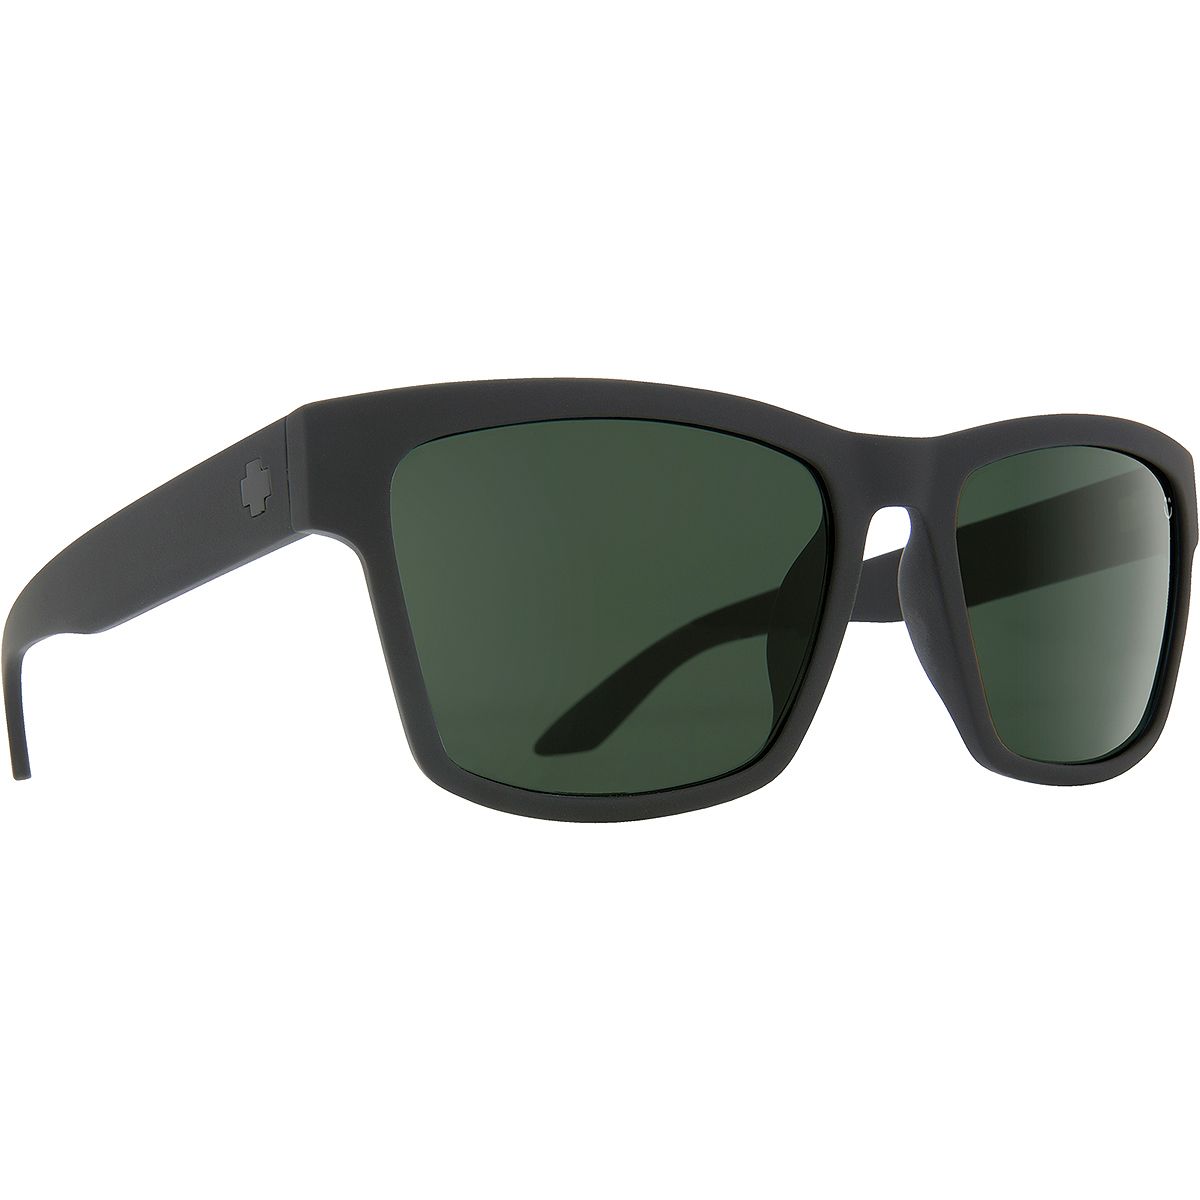 Поляризованные солнцезащитные очки Haight 2 Spy